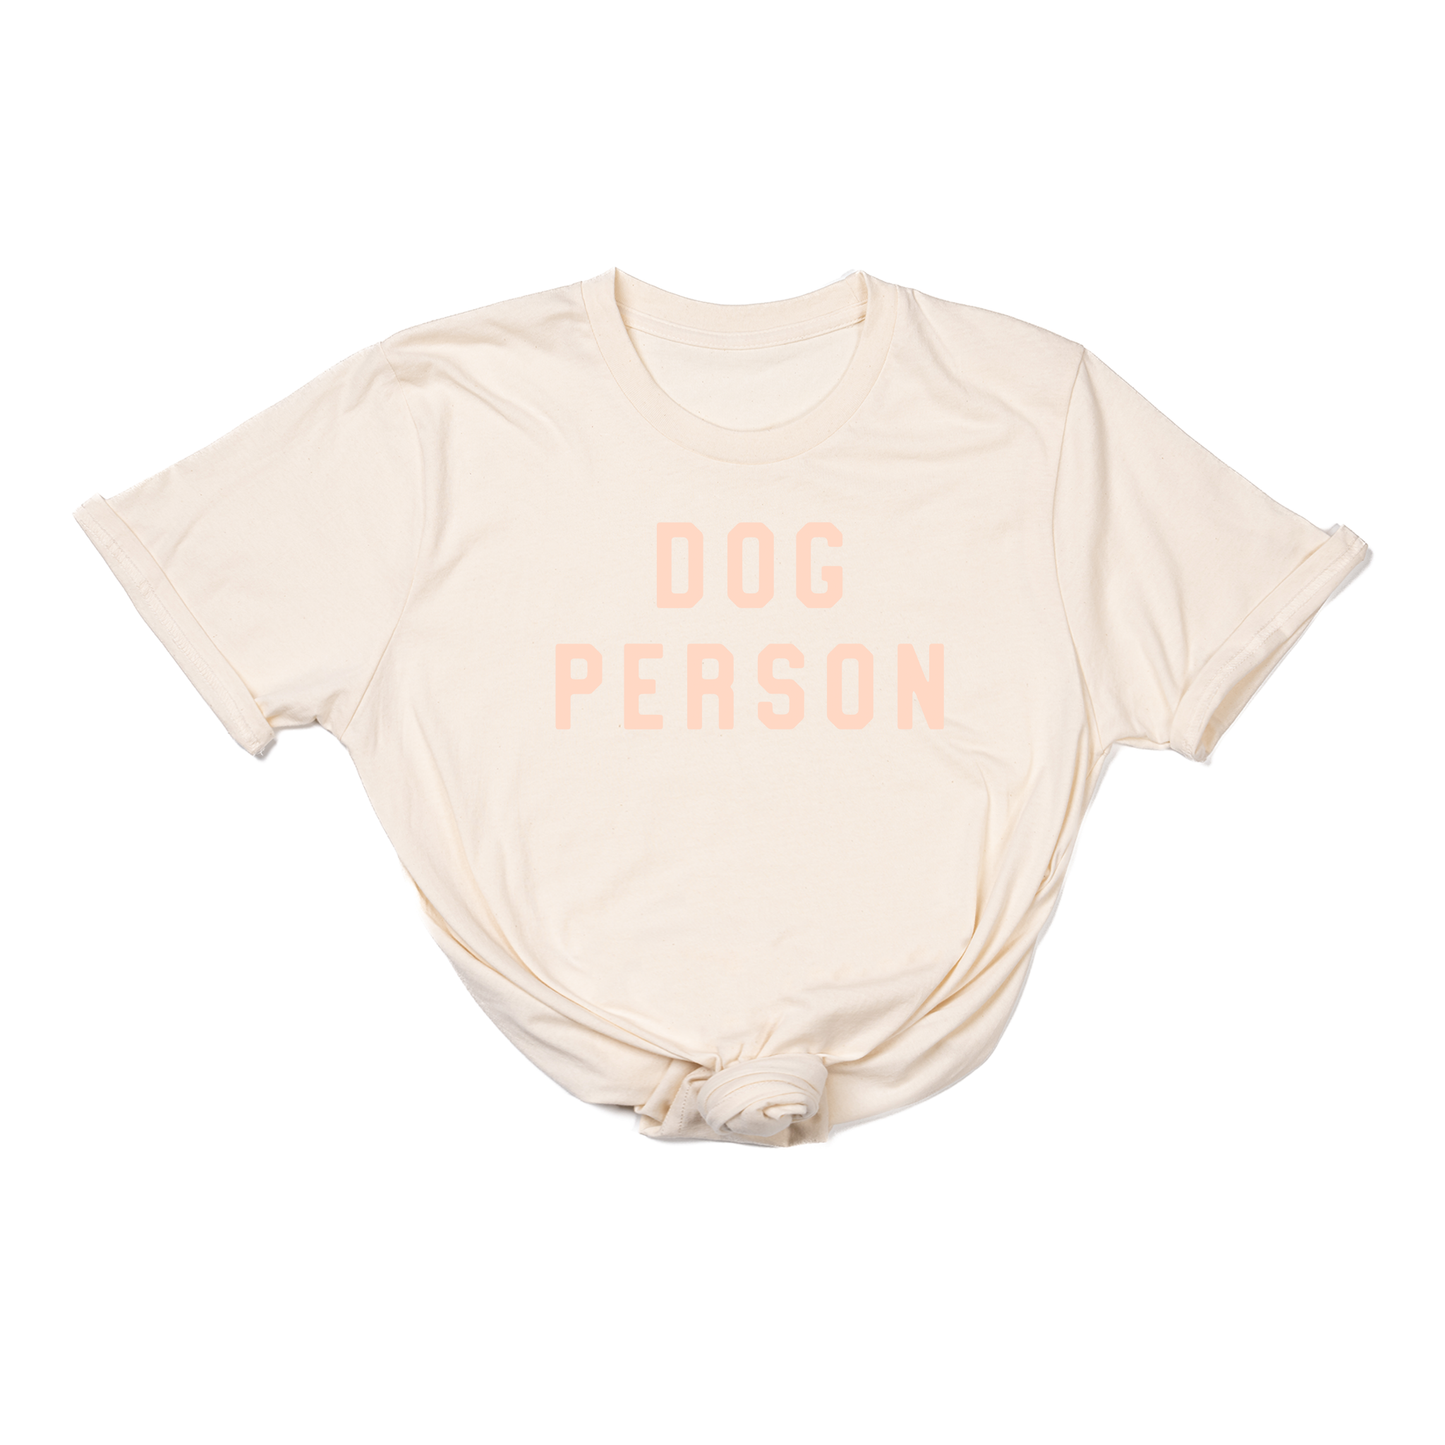 Dog Person (Peach) - Tee (Natural)